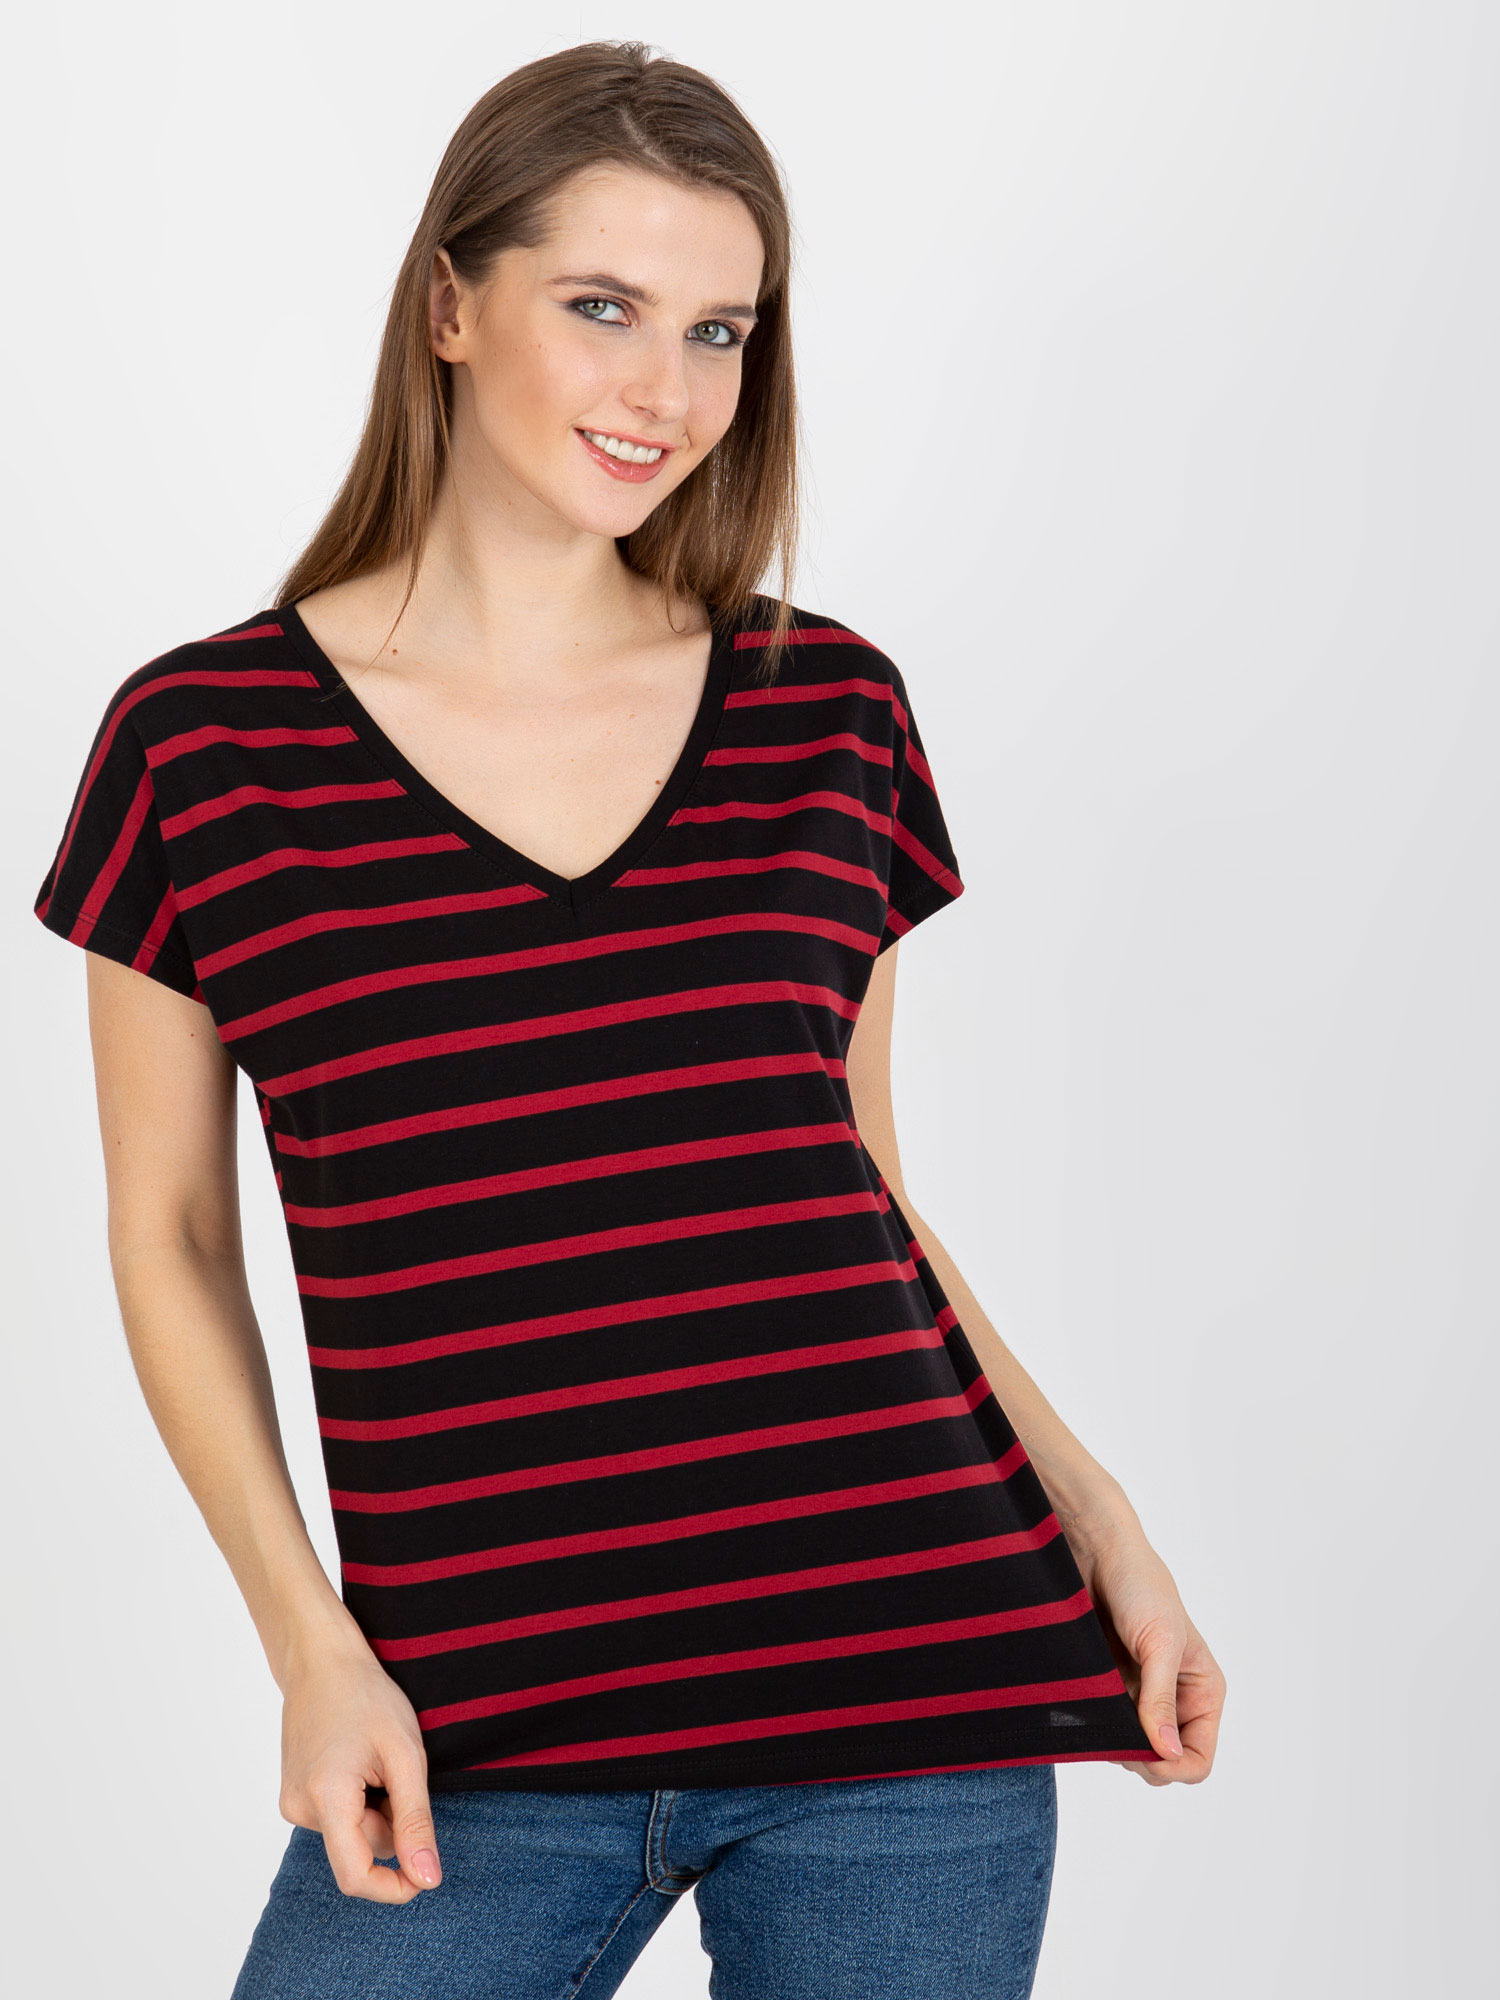 Červeno-černé pruhované dámské tričko RV-TS-8567.26-black-red Velikost: XL